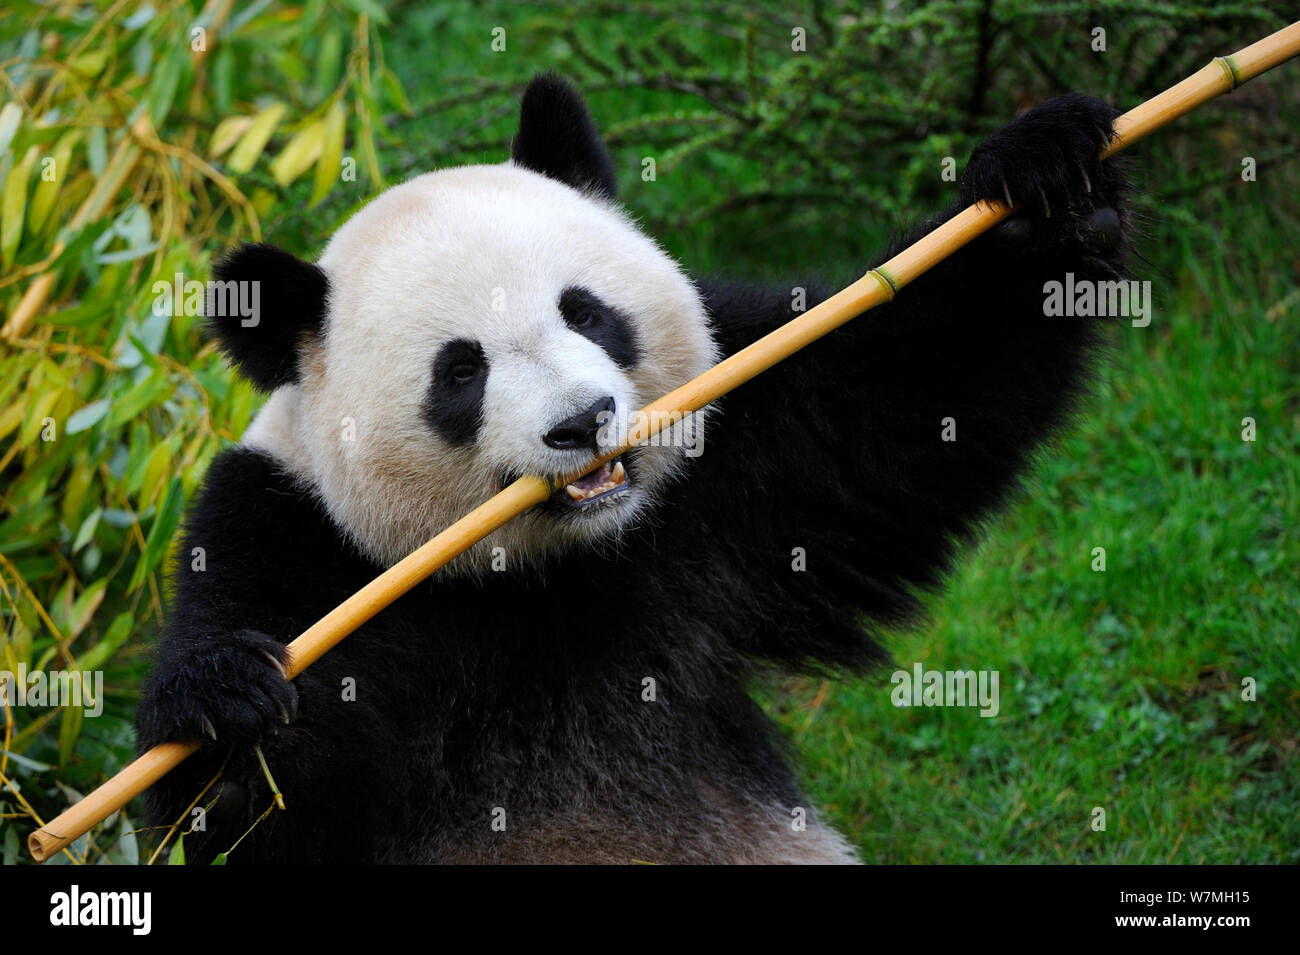 El panda gigante (Ailuropoda melanoleuca) alimentándose de bambú, cautiva, el zoo Parque de Beauval, Francia, en peligro Foto de stock